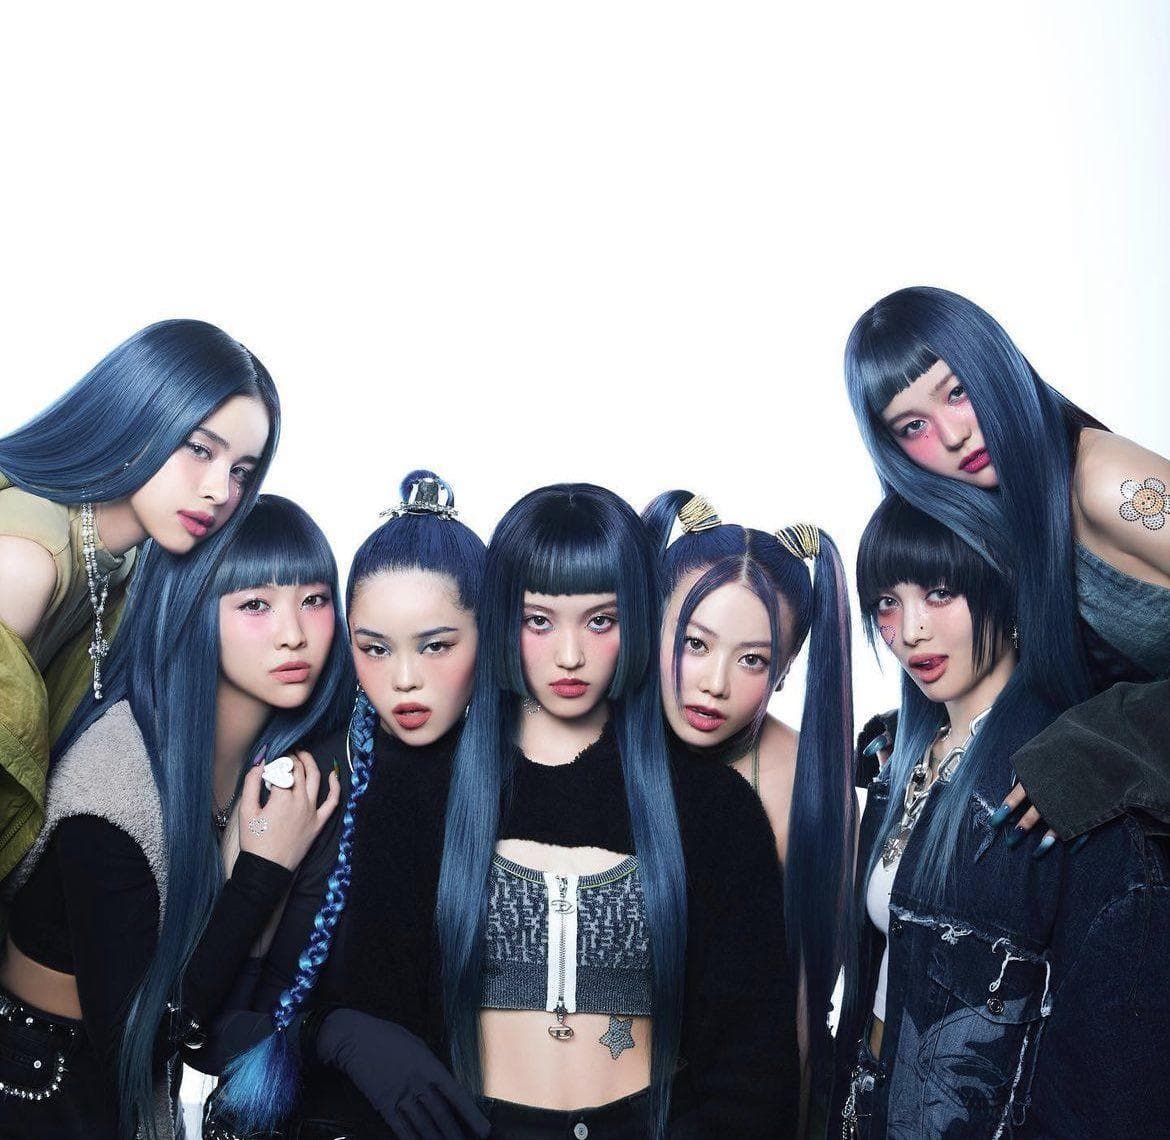 Girlband Blackpink leva o k-pop feminino ao topo das paradas mundiais